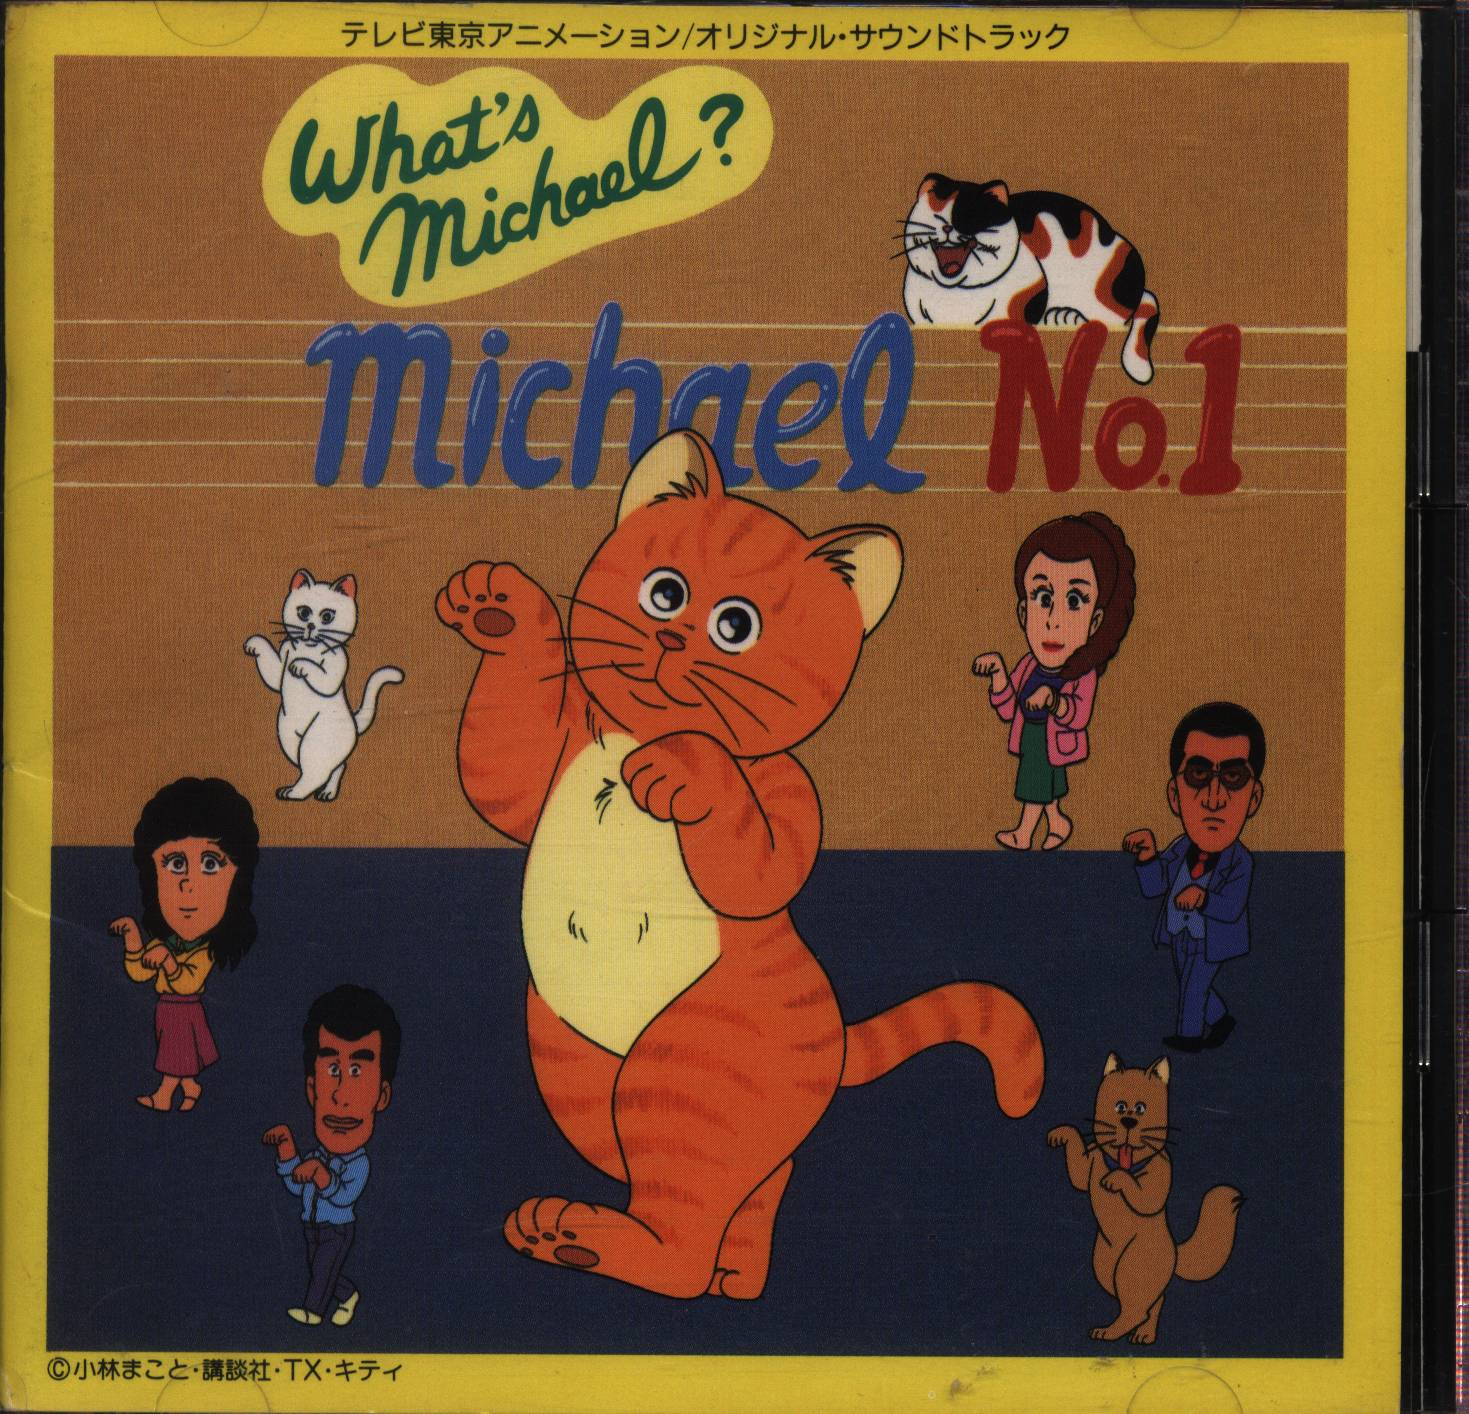 ホワッツマイケル サウンドトラック「Michael No.1」 【感謝価格 